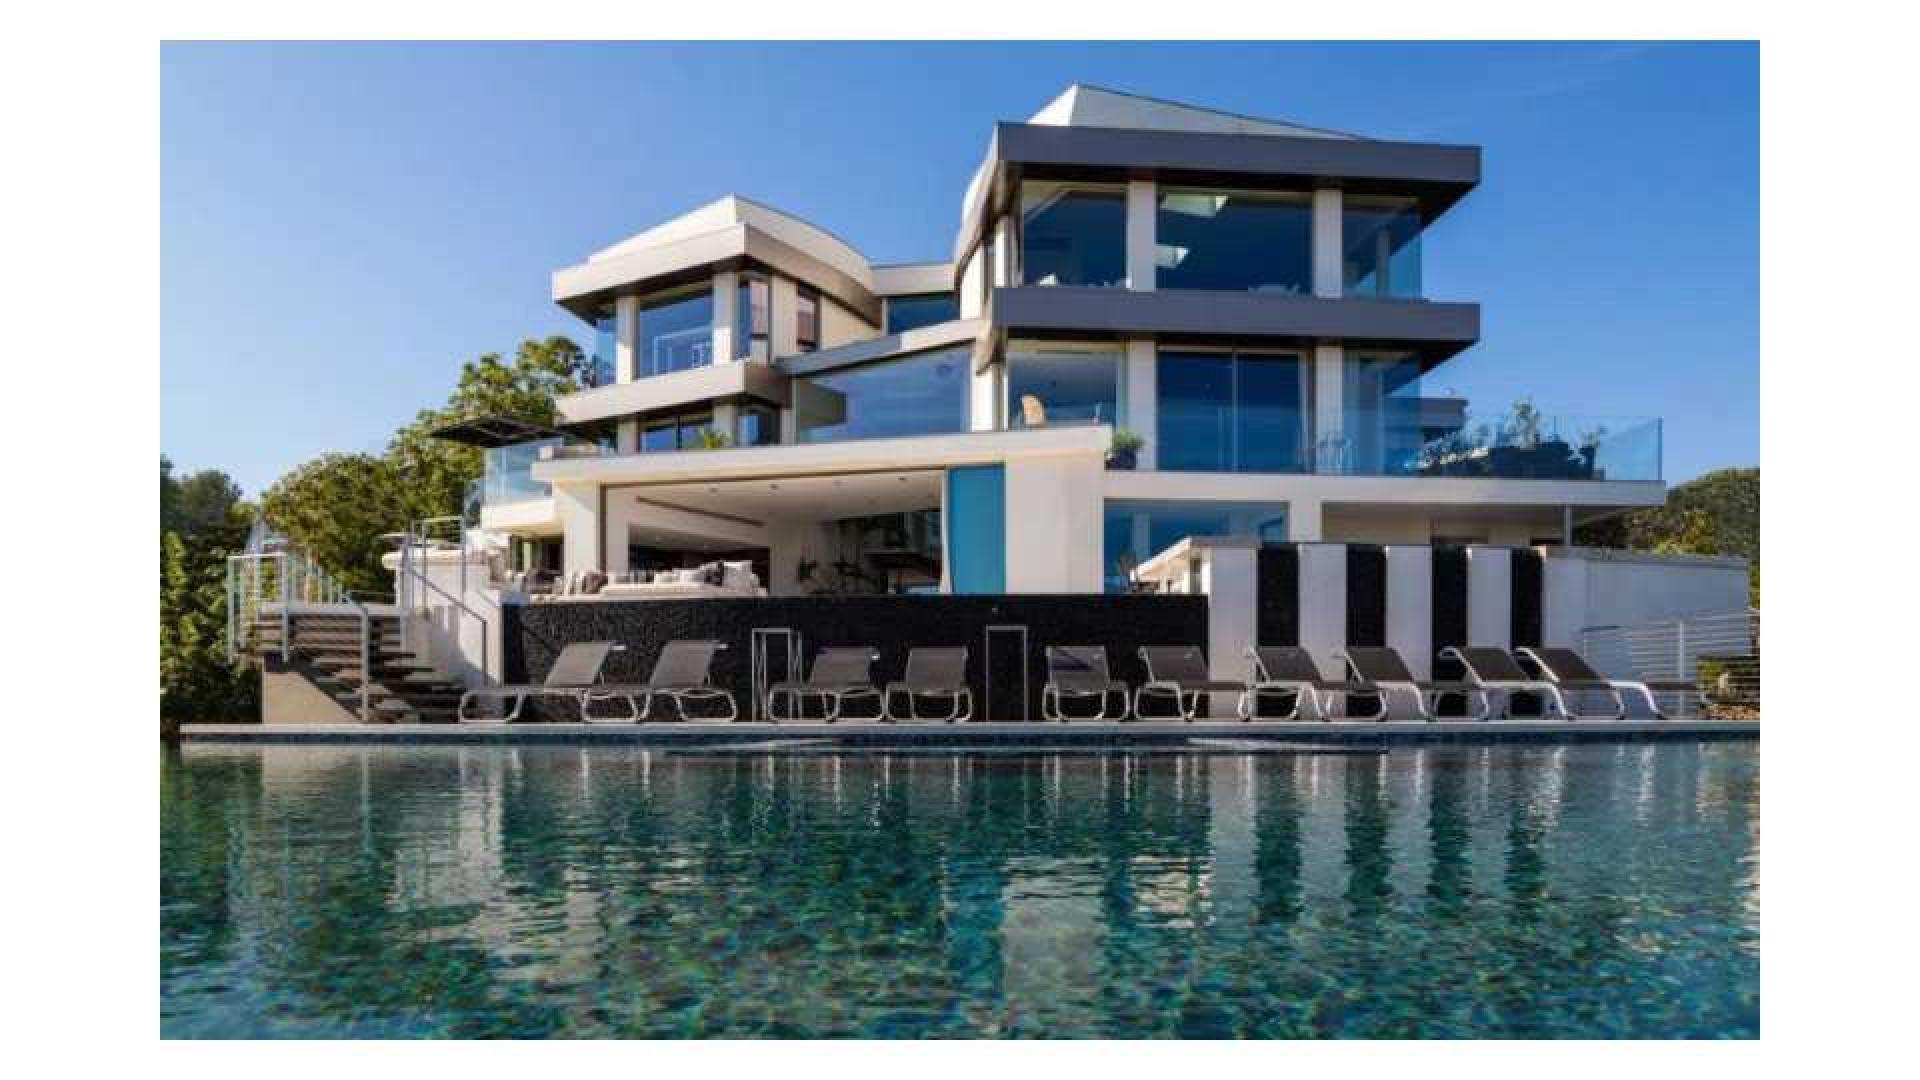 Reinout Oerlemans zet zijn Los Angeles villa te koop. Zie foto's